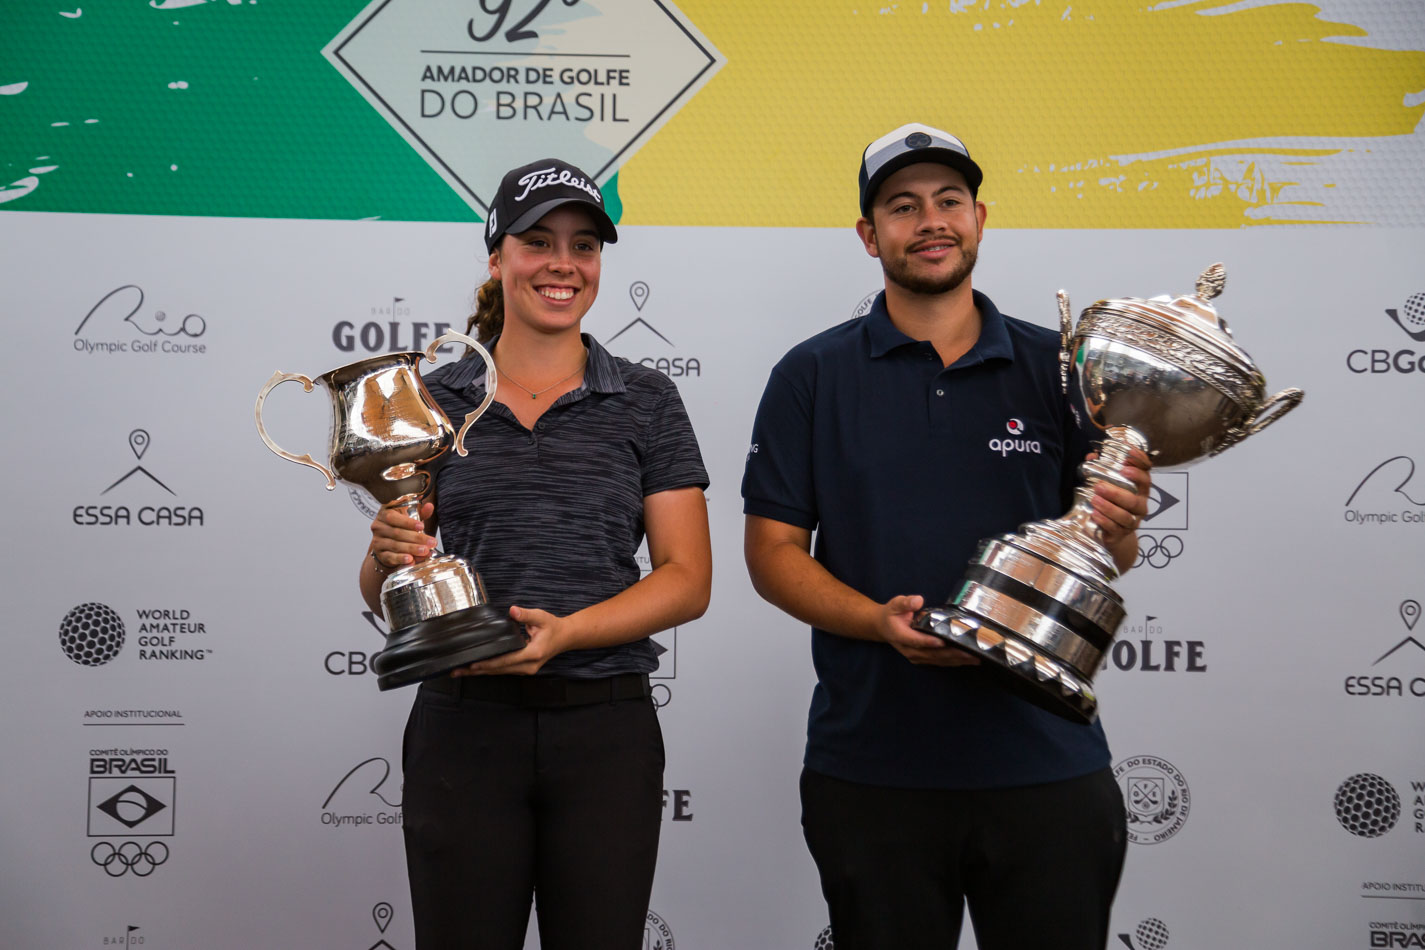 92º Campeonato Amador de Golfe do Brasil -  Final